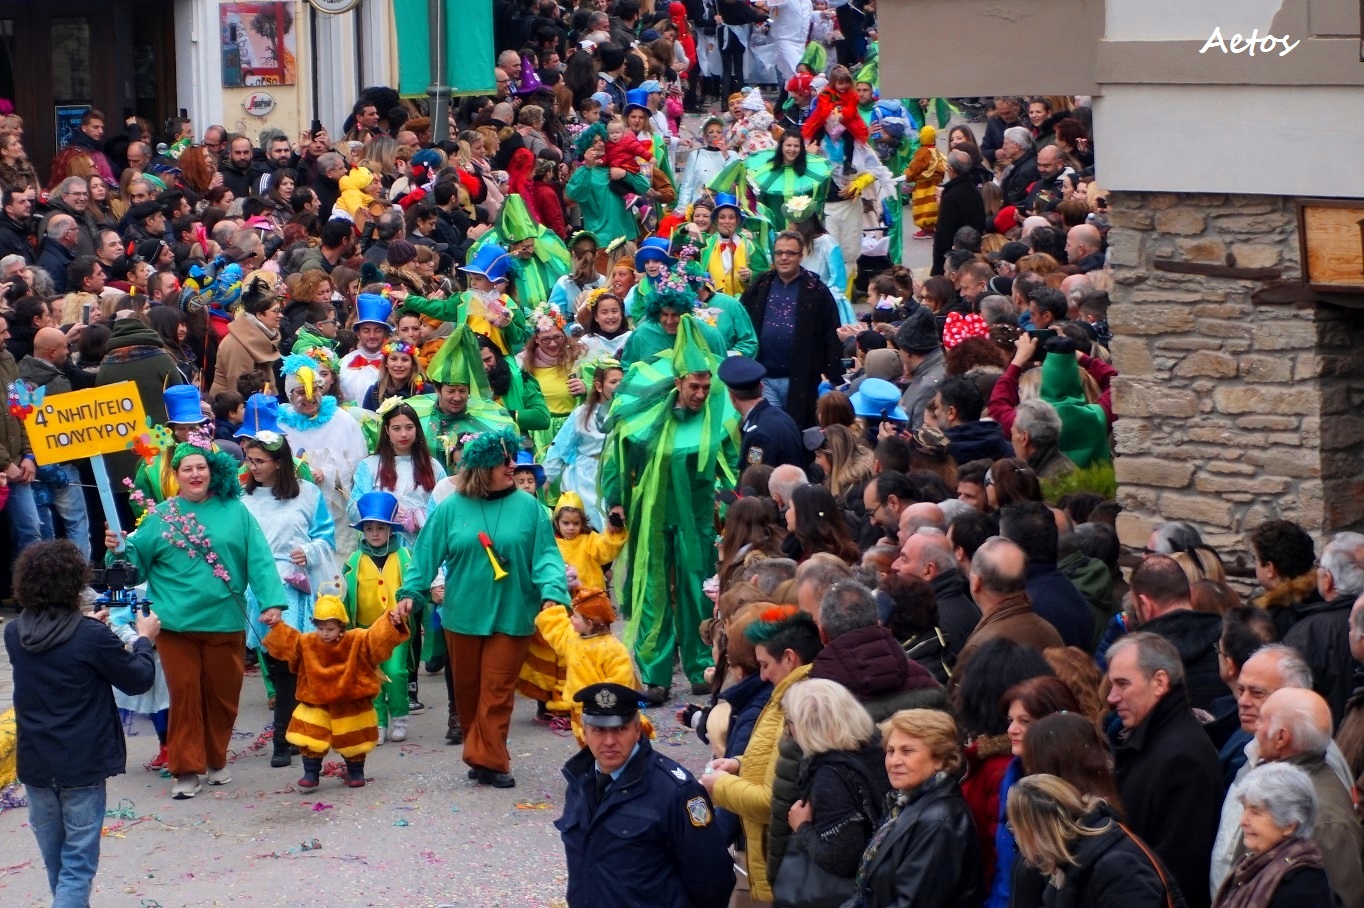 Πολυγυρινό καρναβάλι 2023 - Πρόγραμμα εκδηλώσεων